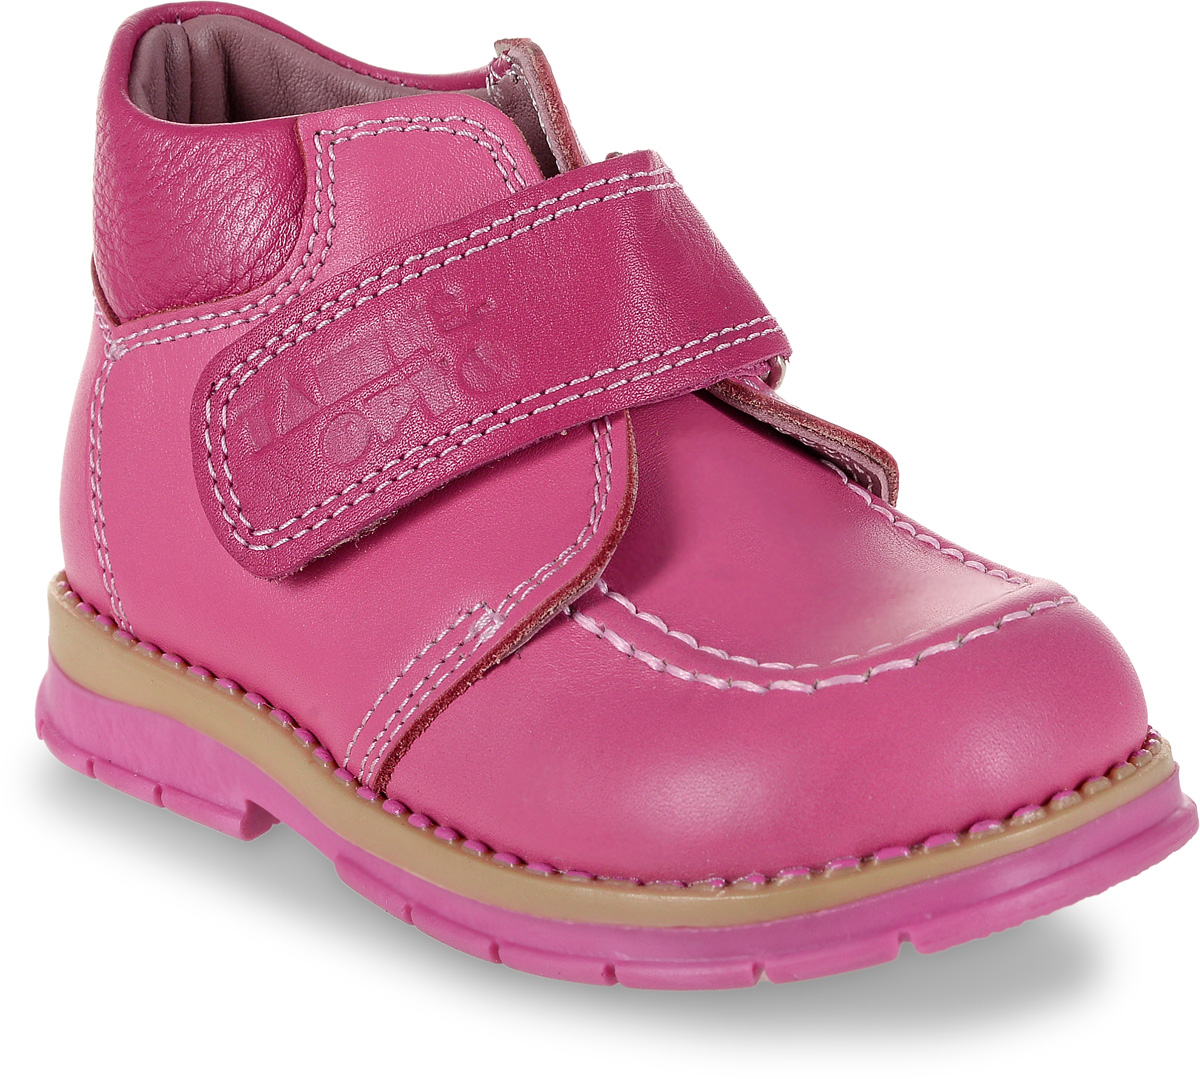 Ботинки для девочки Таши Орто, цвет: розовый. 241-45. Размер 22